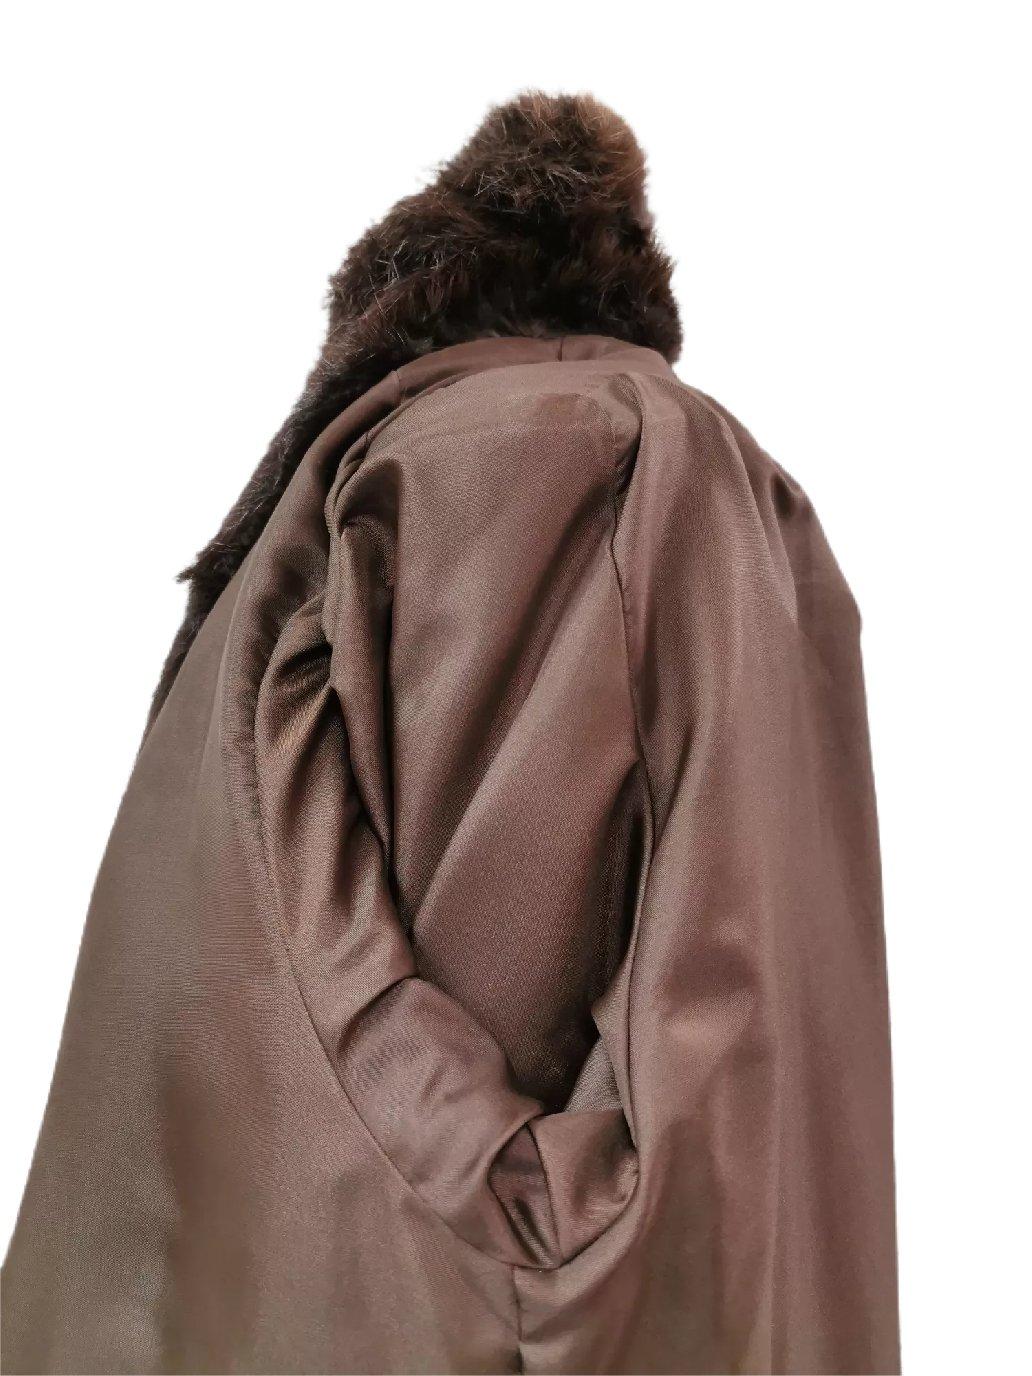 Women's Brand new Birger christensen beaver fur coat size 14 For Sale